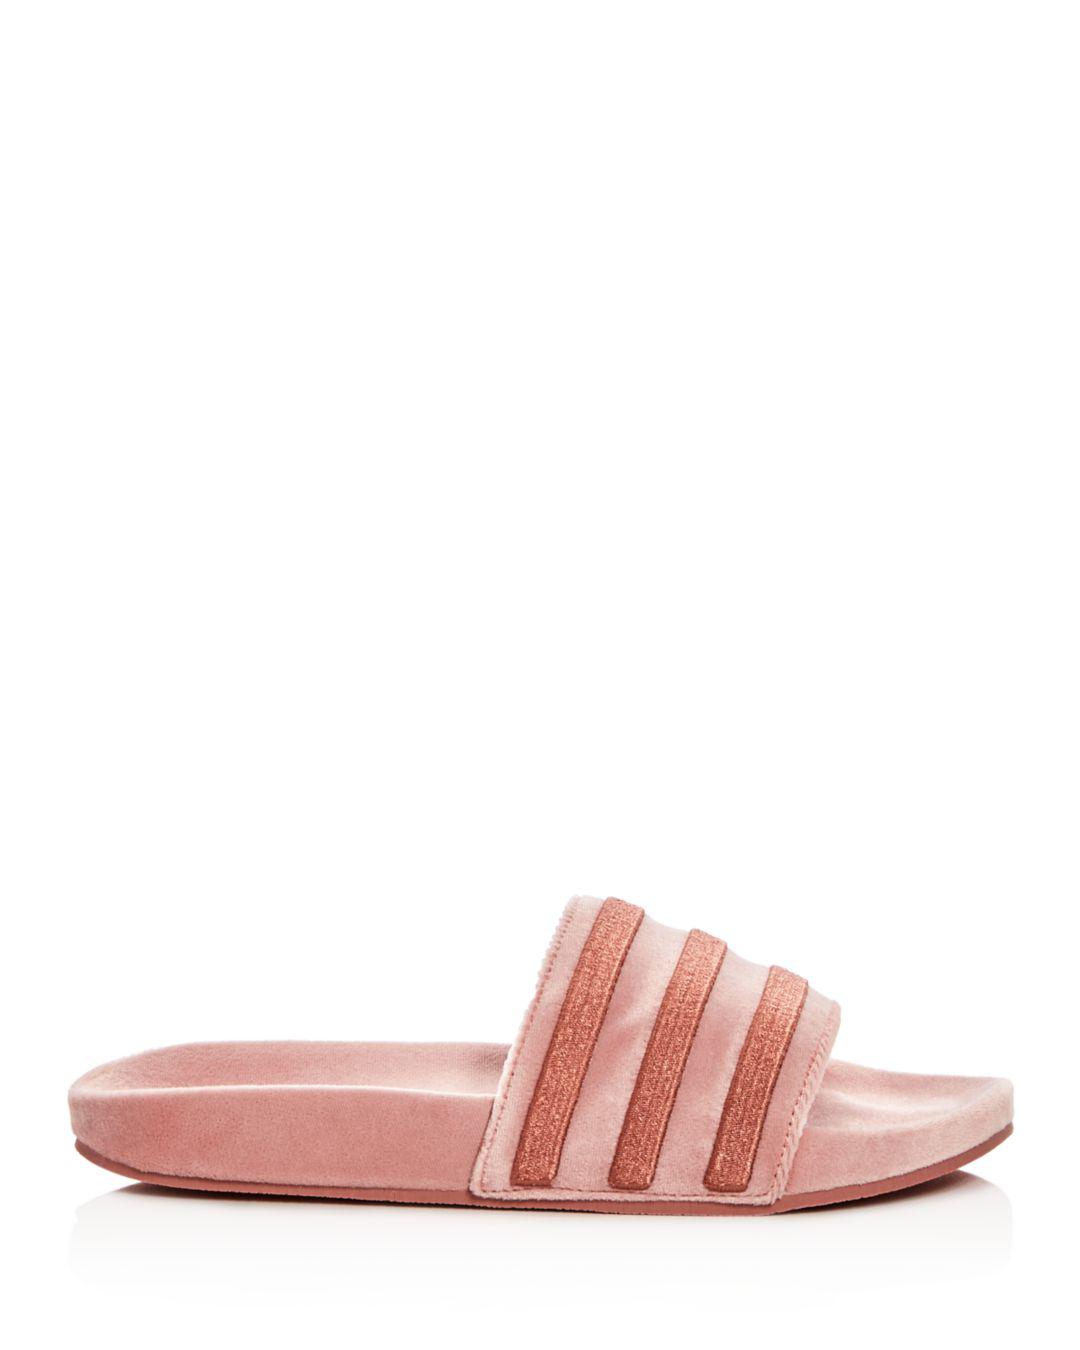 adidas Women's Adilette Velvet Pool Slides in Pink - Lyst